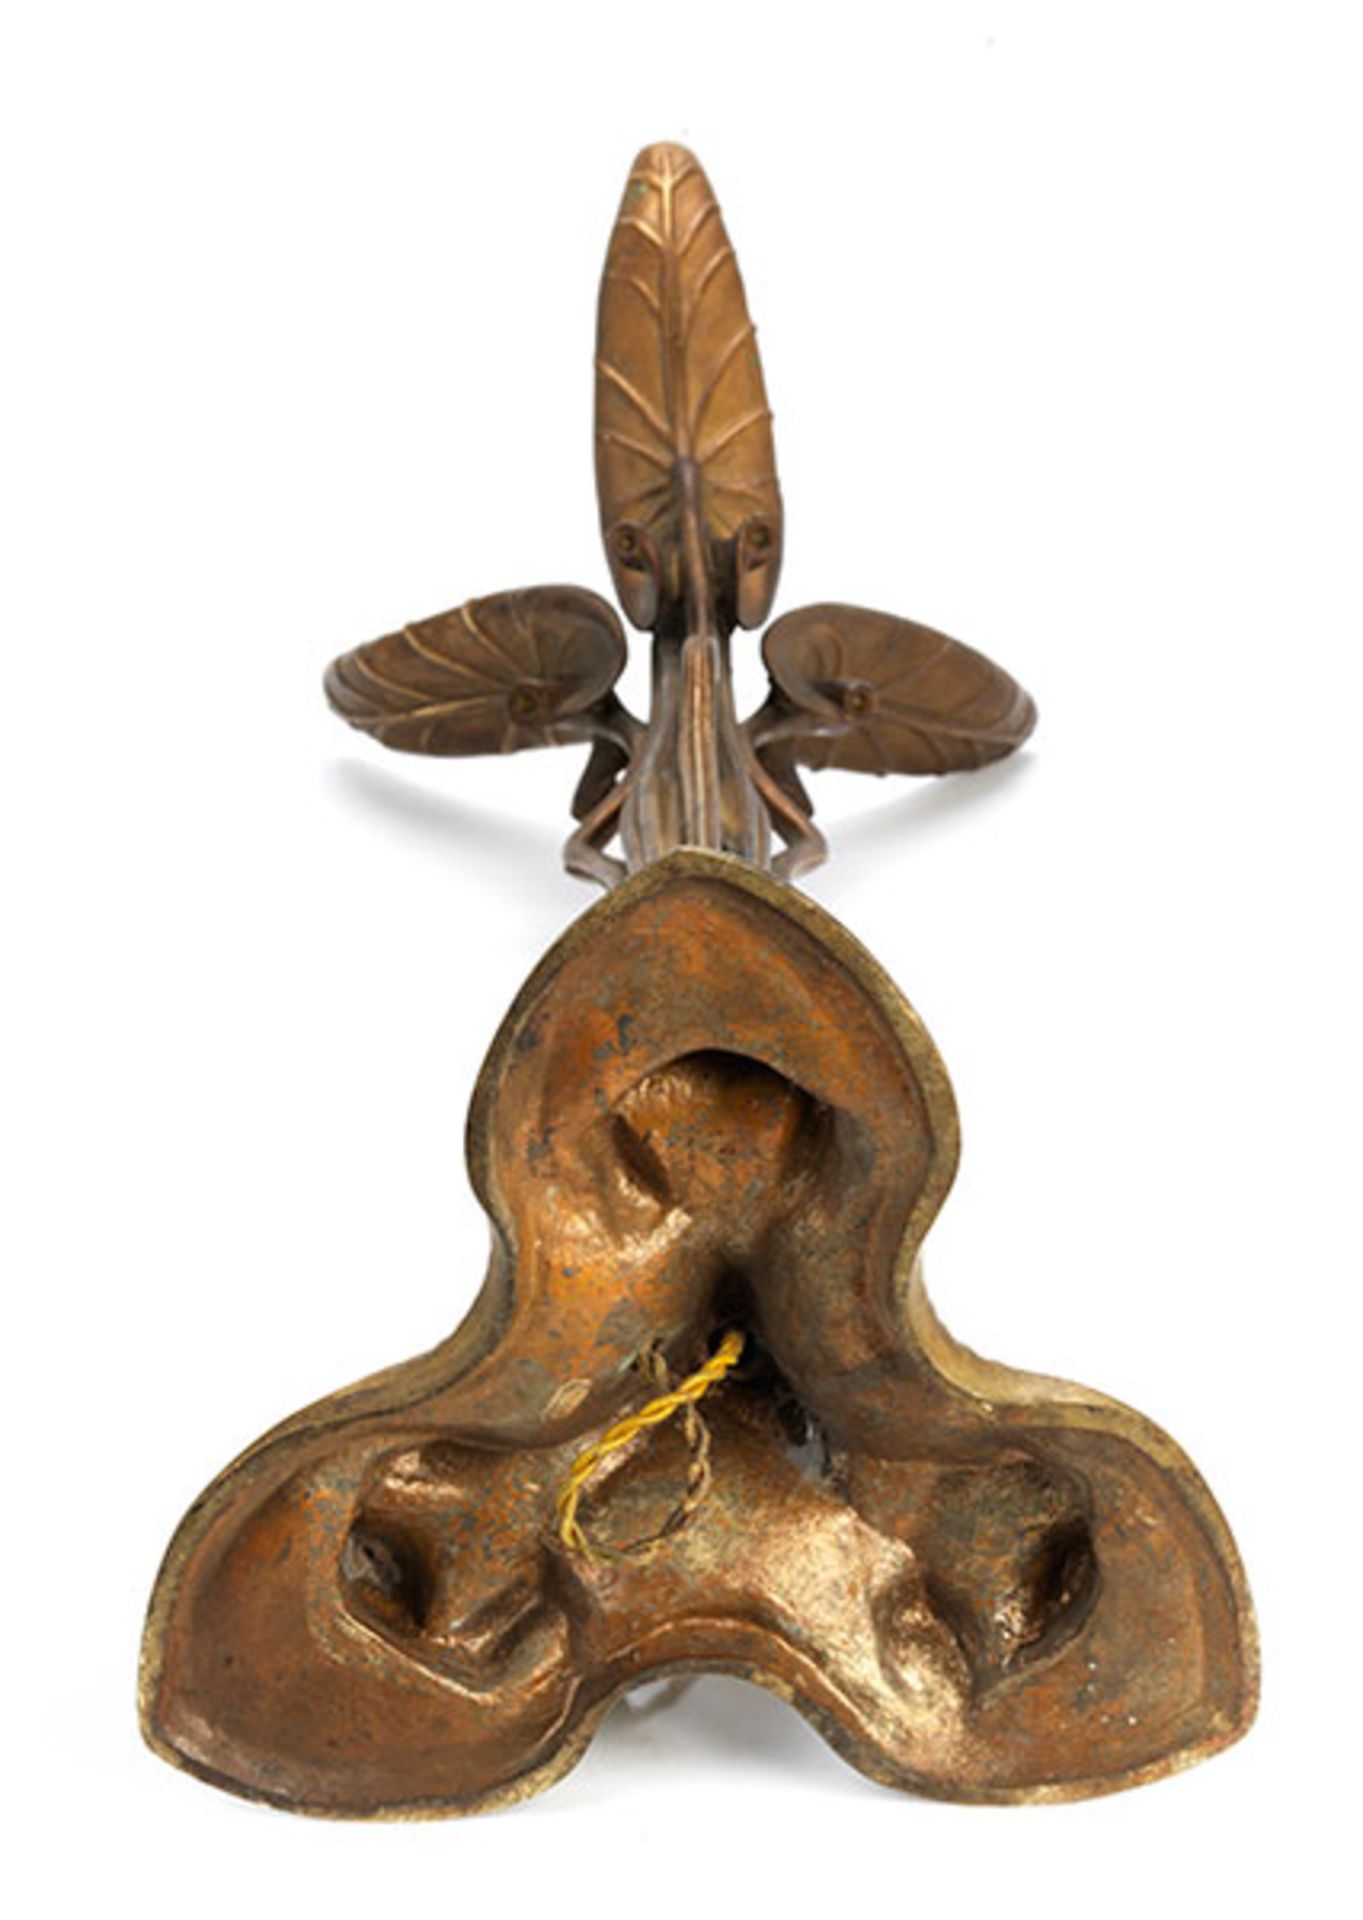 Extrem seltene Nénuphar Tischlampe Höhe: 74 cm. Fuß signiert "L. Majorelle Nancy", Lampenschirm - Bild 9 aus 10